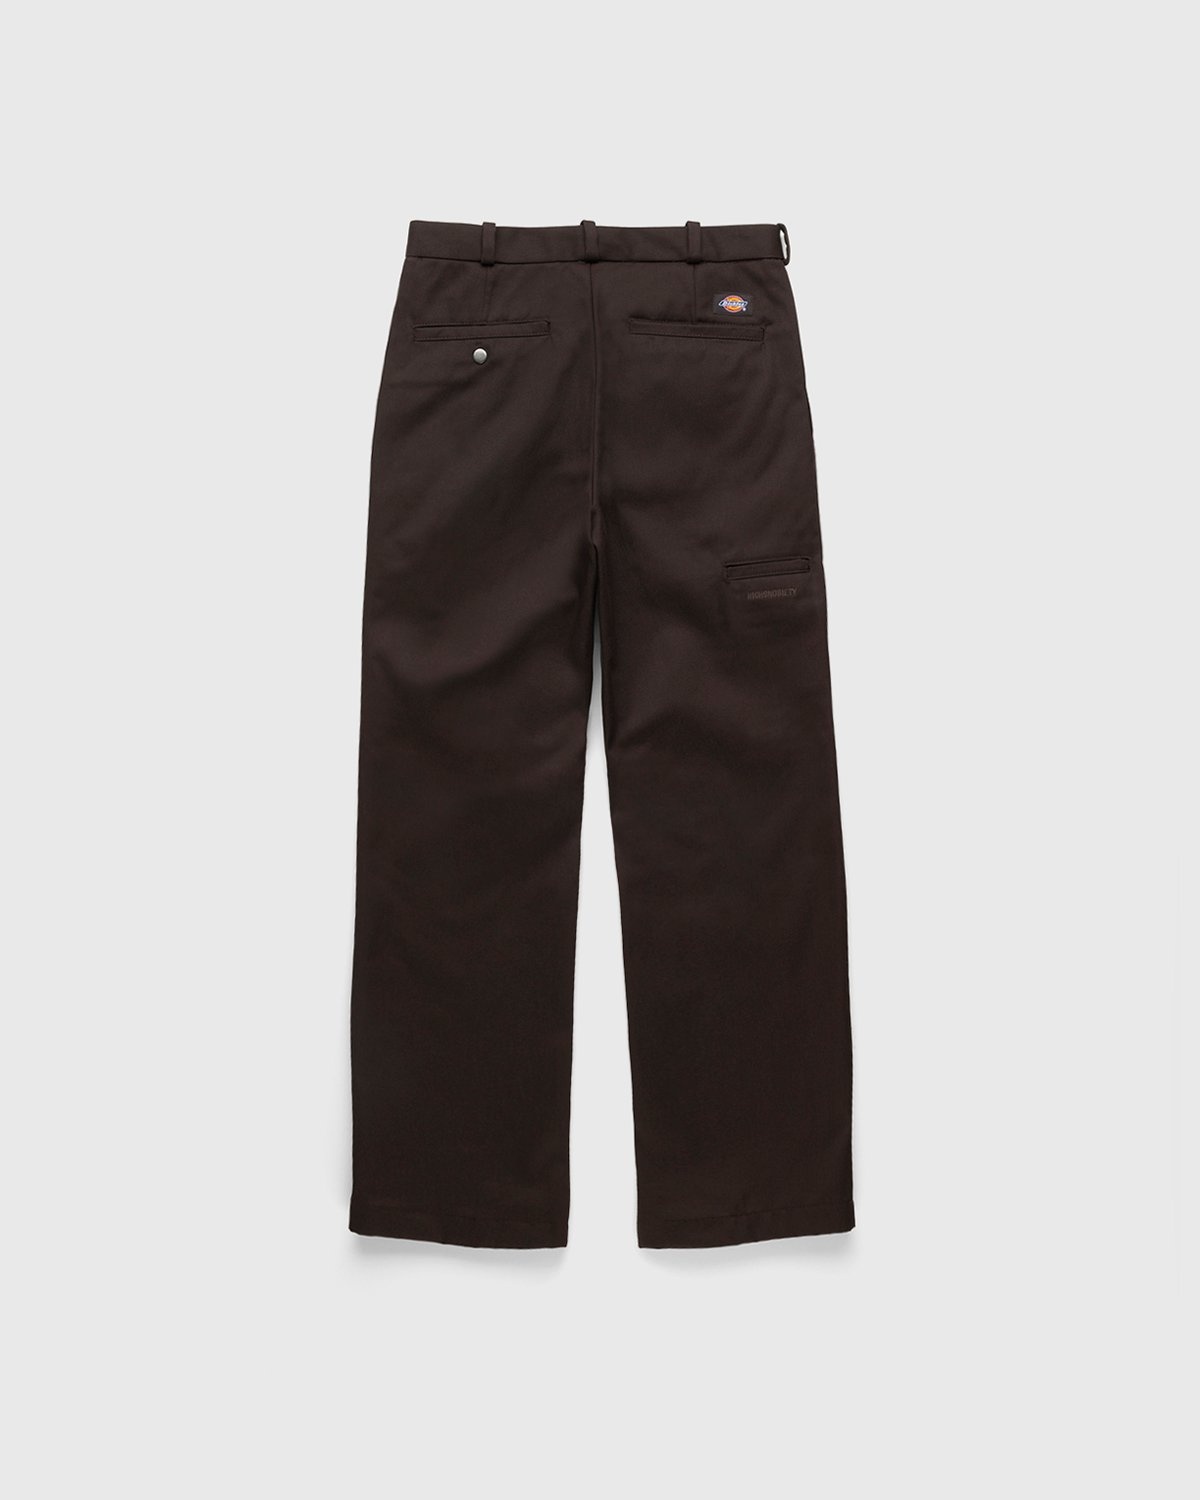 Highsnobiety x Dickies – Pleated Work Pants Dark Brown - Work Pants - Brown - Image 2